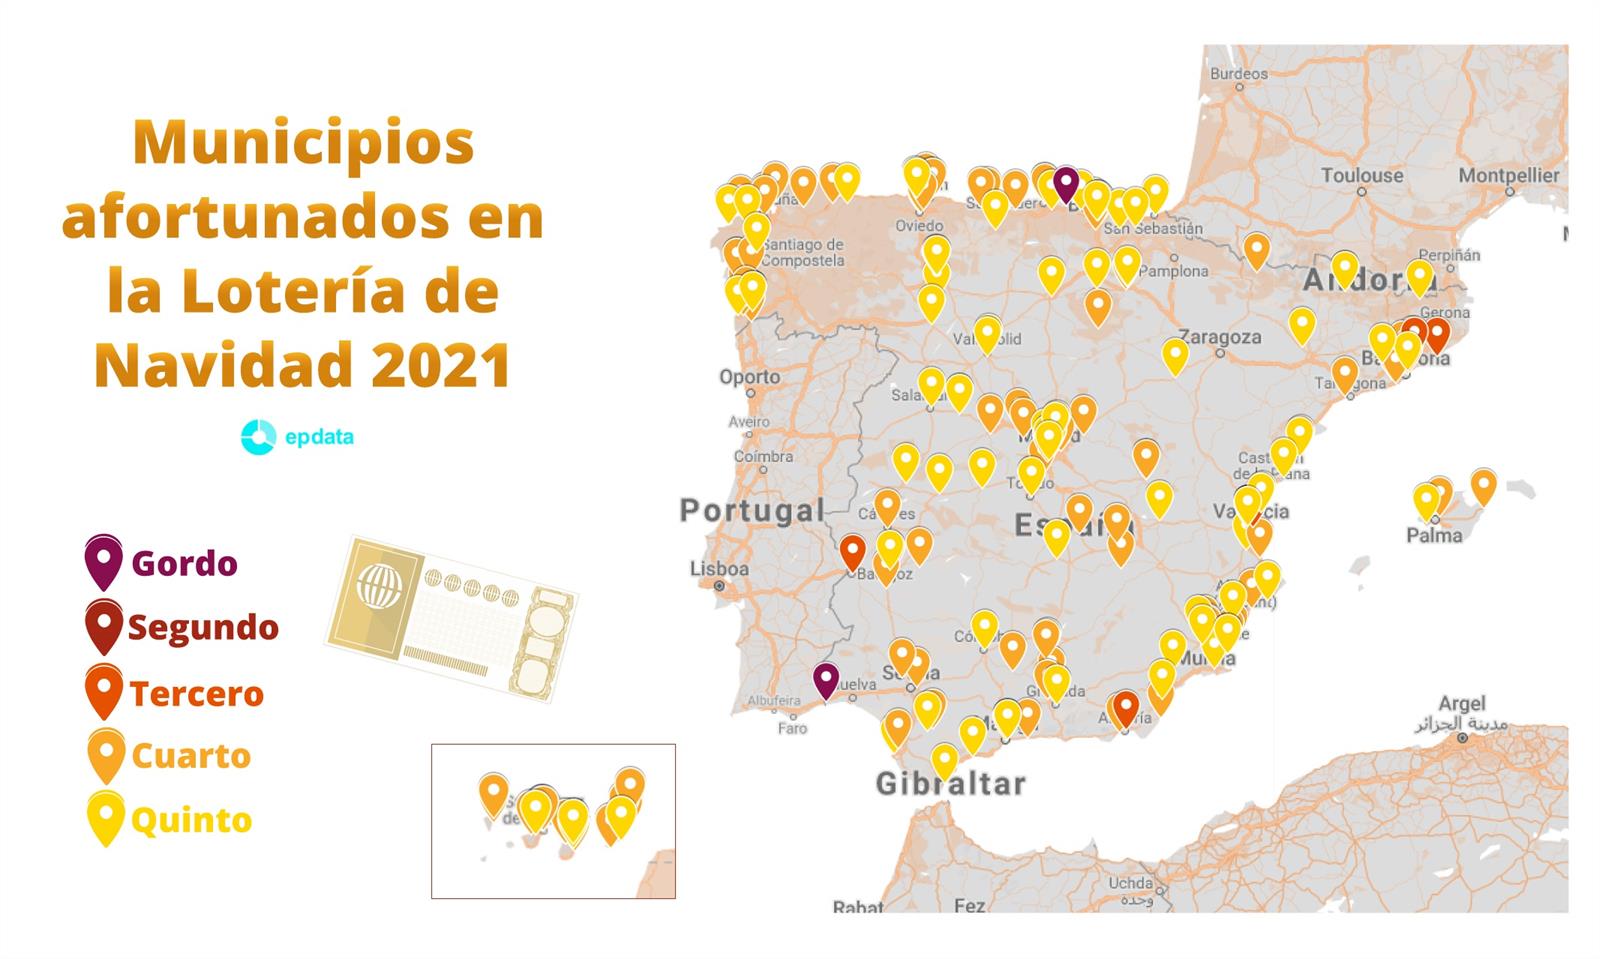 Municipios afortunados en la Lotería de Navidad 2021